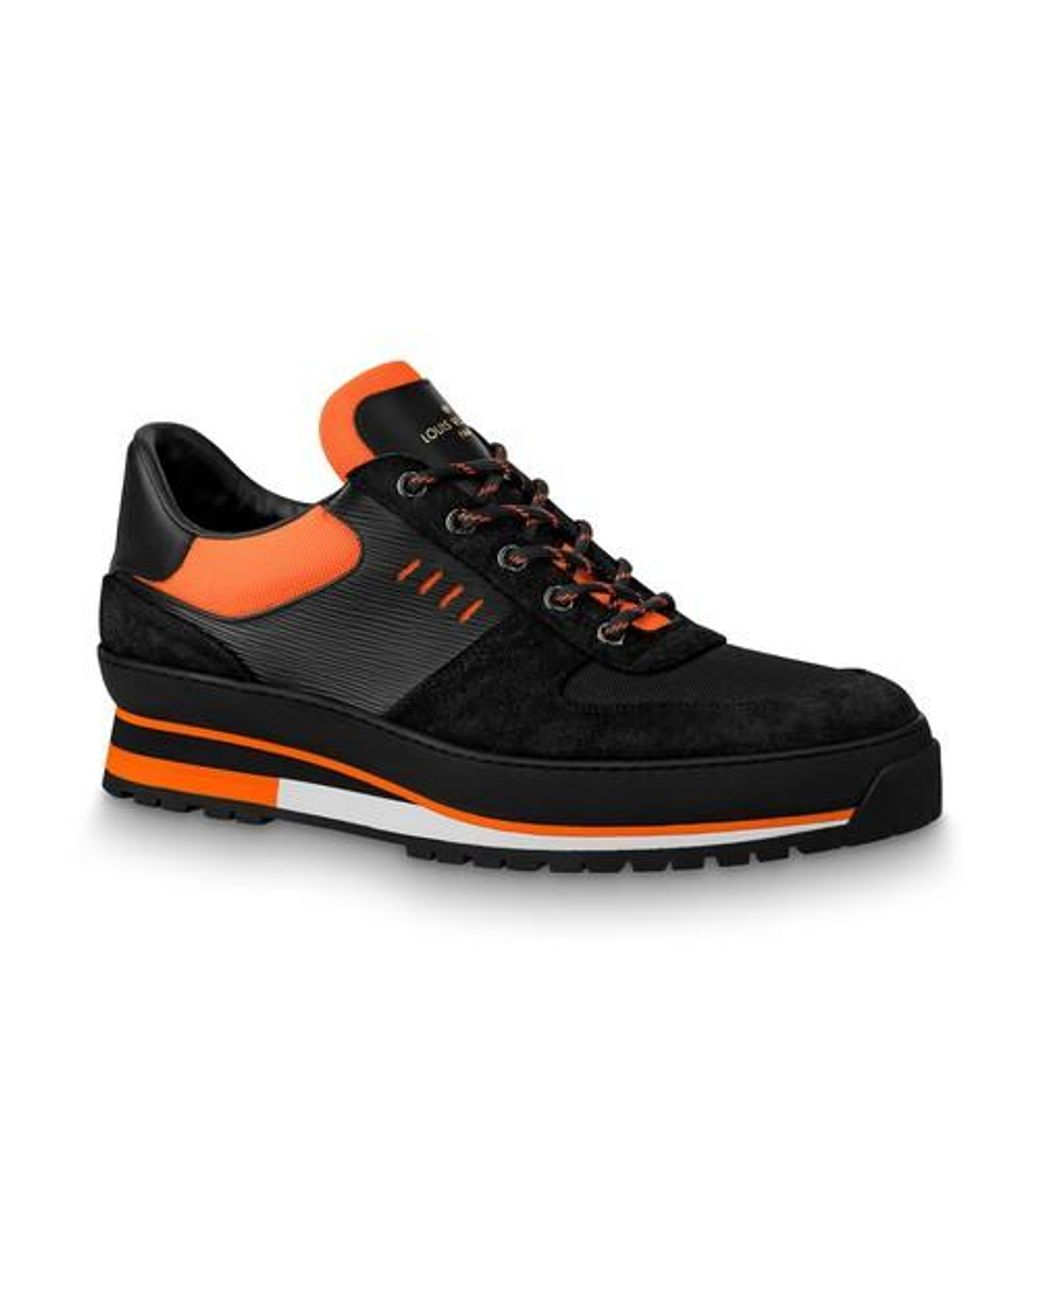 louis vuitton shoes orange